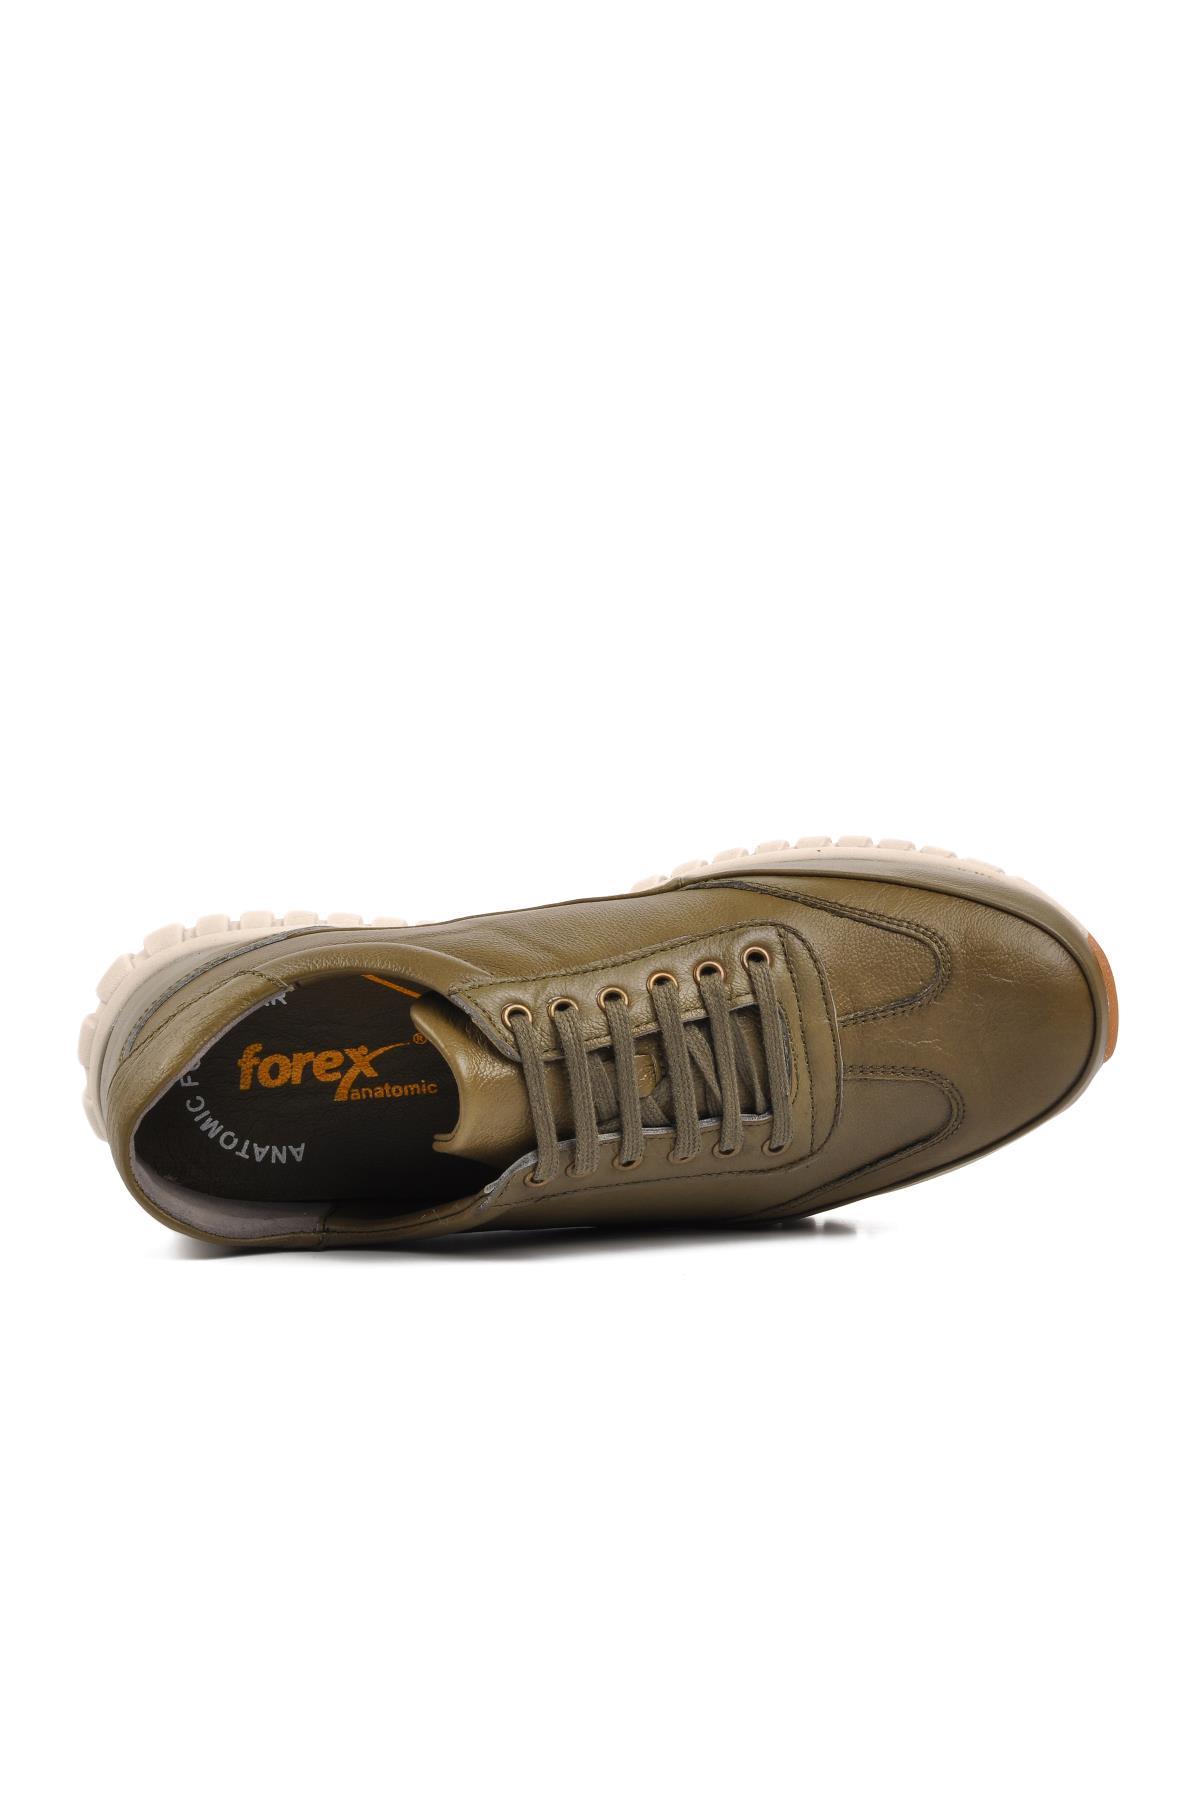 Forex 3038-T Yeşil Hakiki Deri Erkek Günlük Ayakkabı - Ayakmod